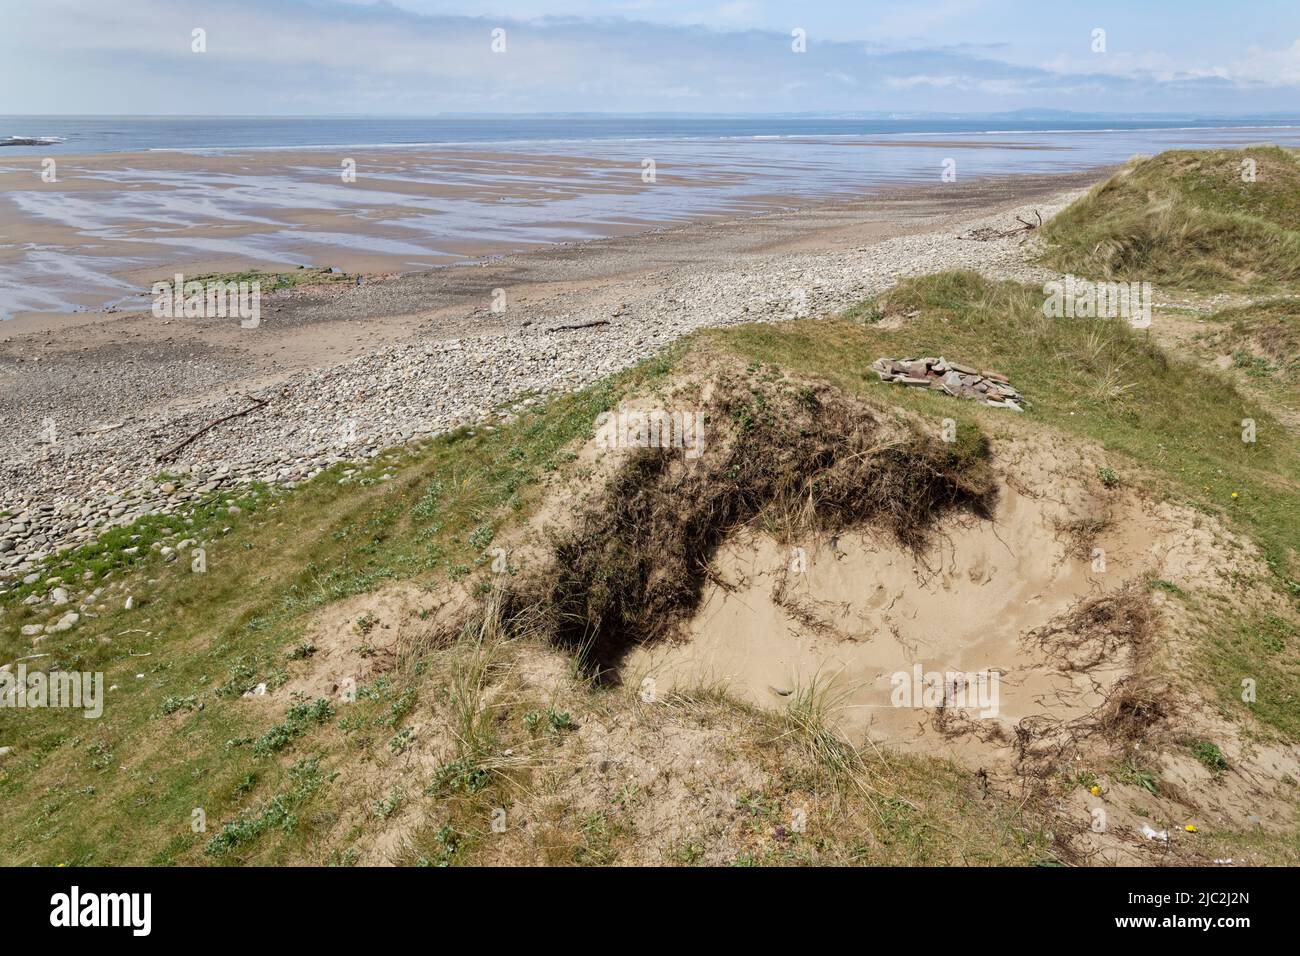 Dunas de arena costeras erosionadas en el frente del mar, posiblemente empeoradas por los daños causados por el fuego de los campamentos a la vegetación y las esteras de raíz, Kenfig NRR, Glamourgan, Gales, Reino Unido, Mayo. Foto de stock